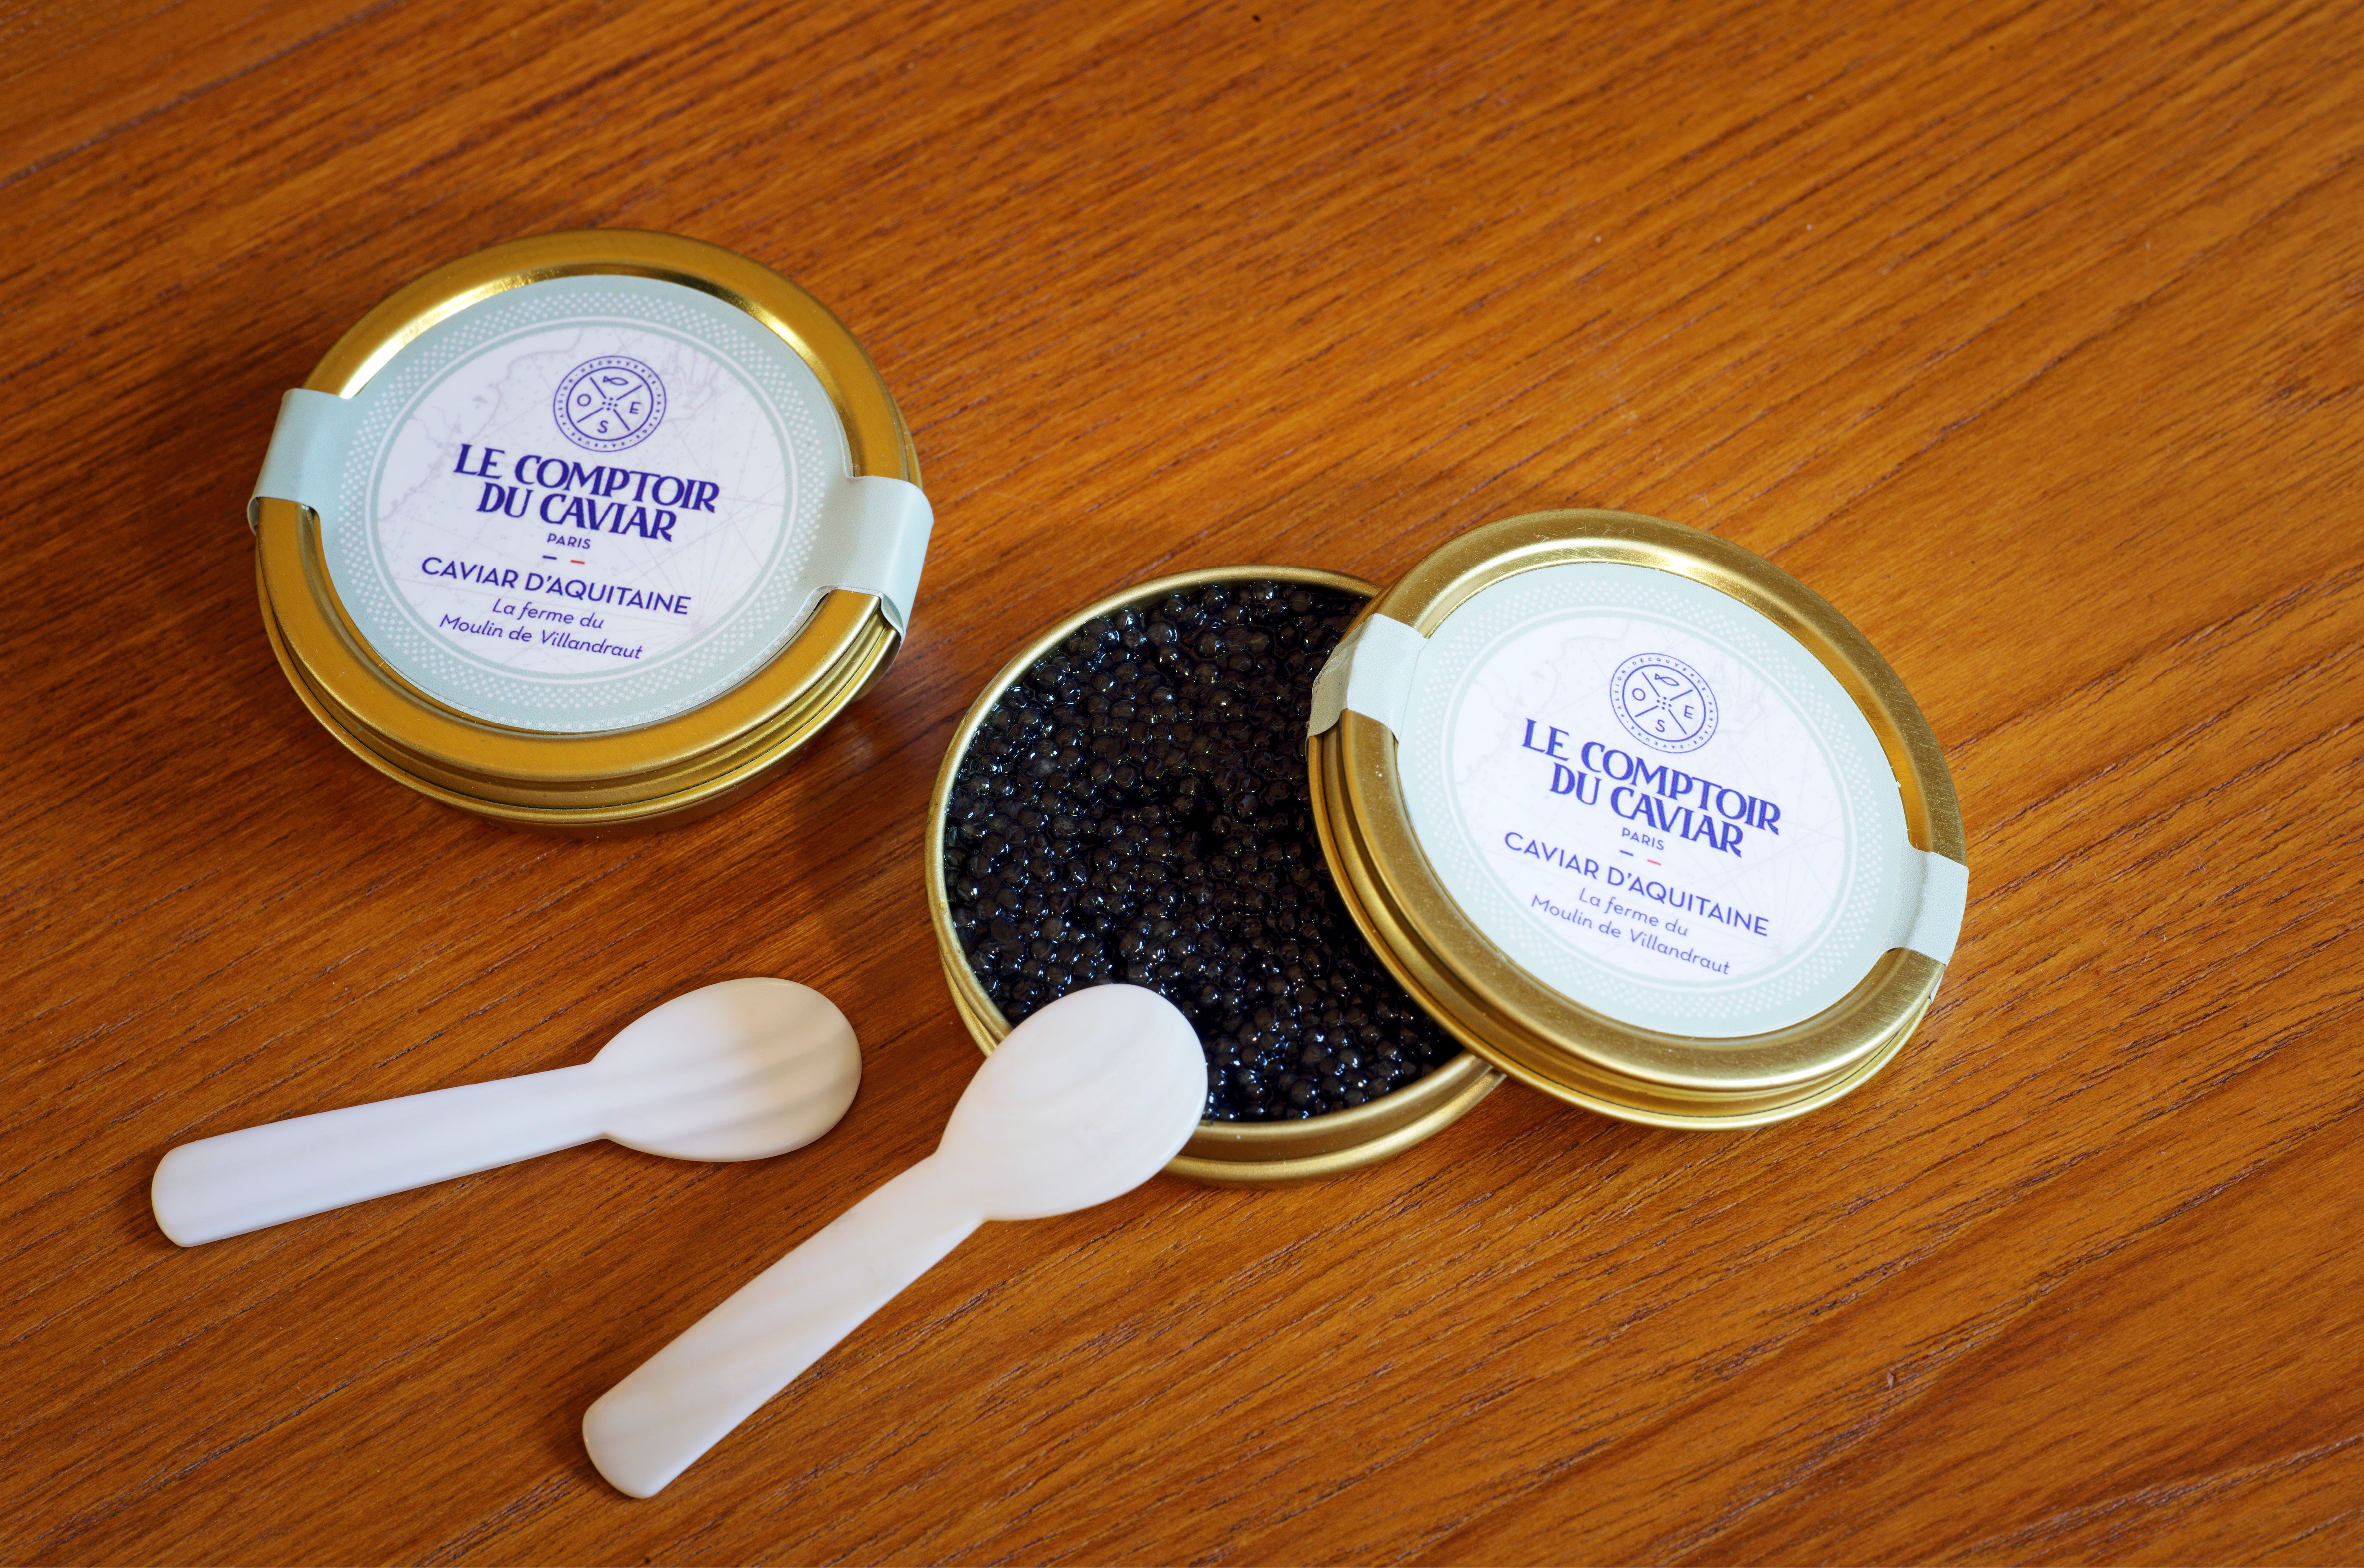 Le Comptoir du Caviar - Caviar d'Aquitaine